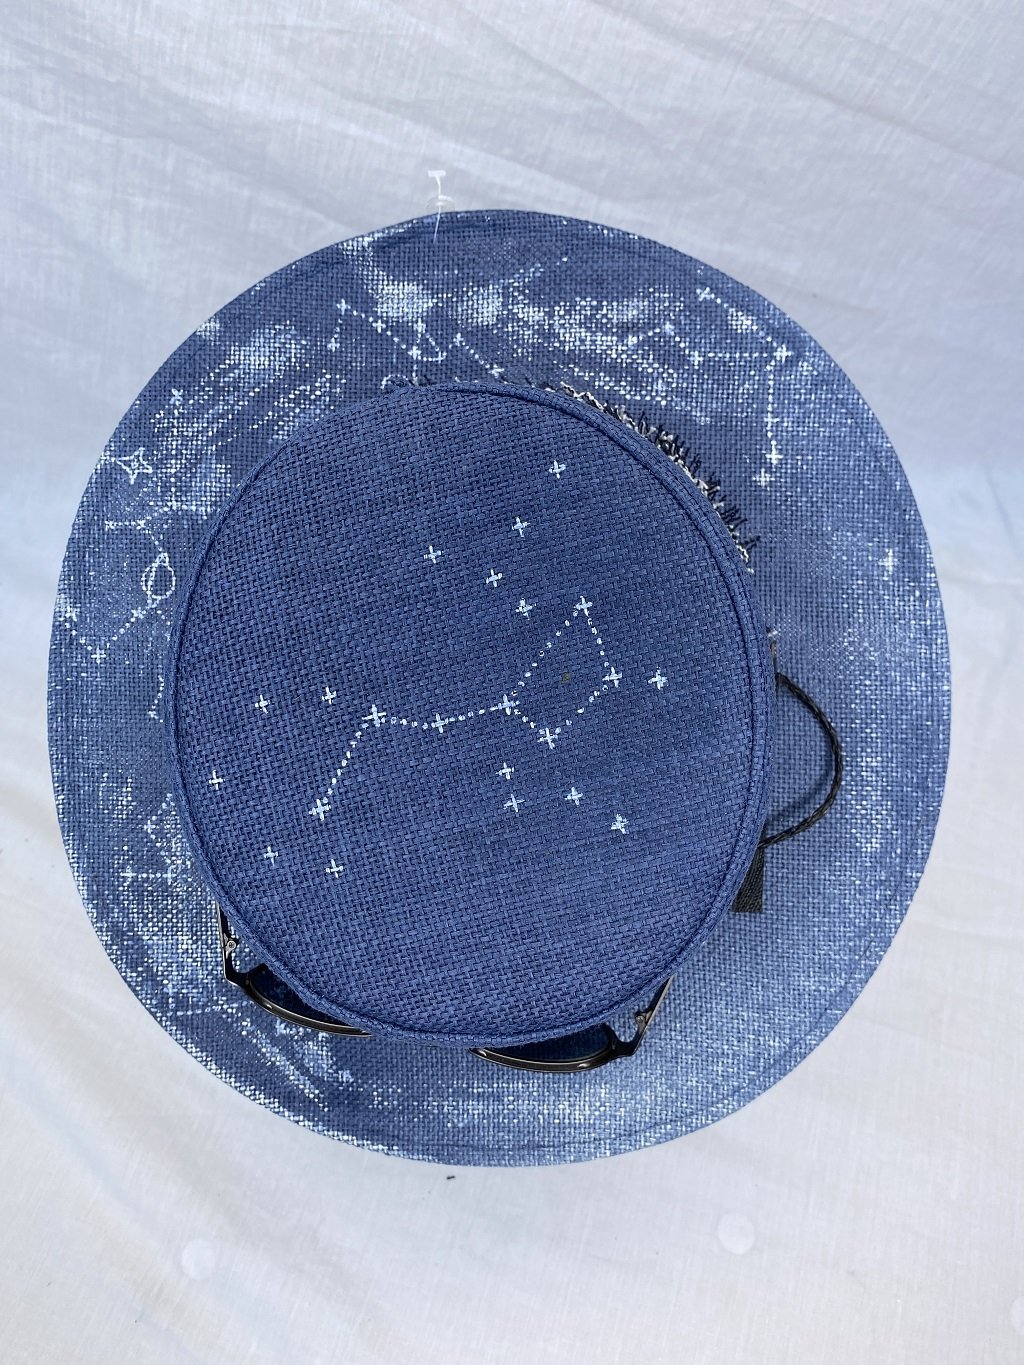 Sombrero Personalizado "Constelacion" Diseño De Autor, Hecho A Mano, Con Gafas